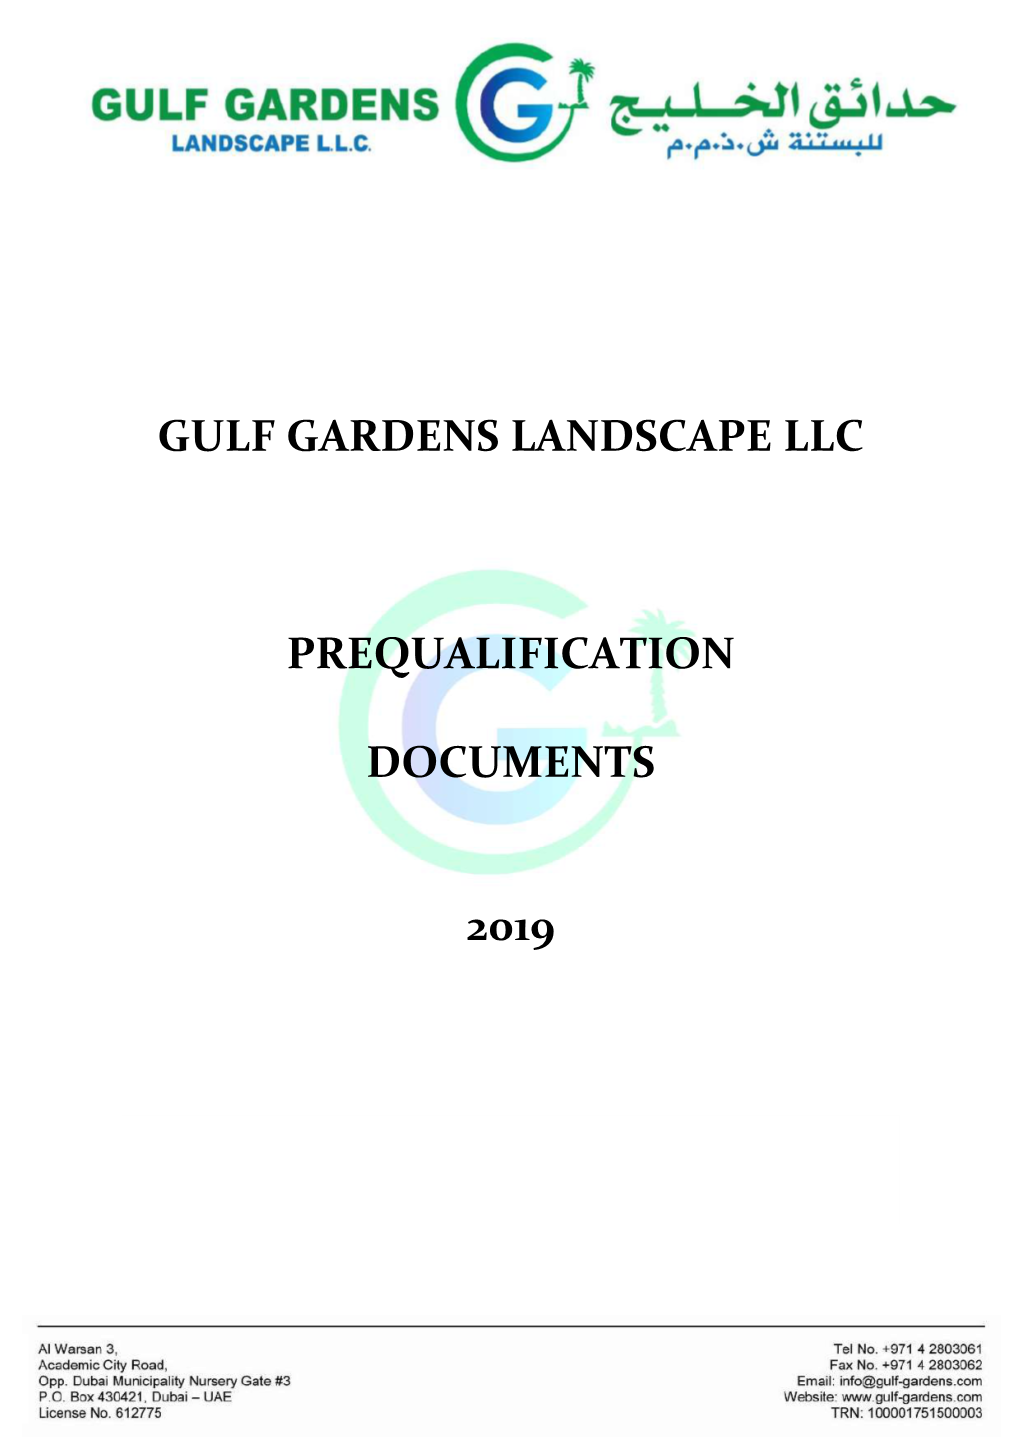 Gulf Gardens Landscape Llc Prequalification